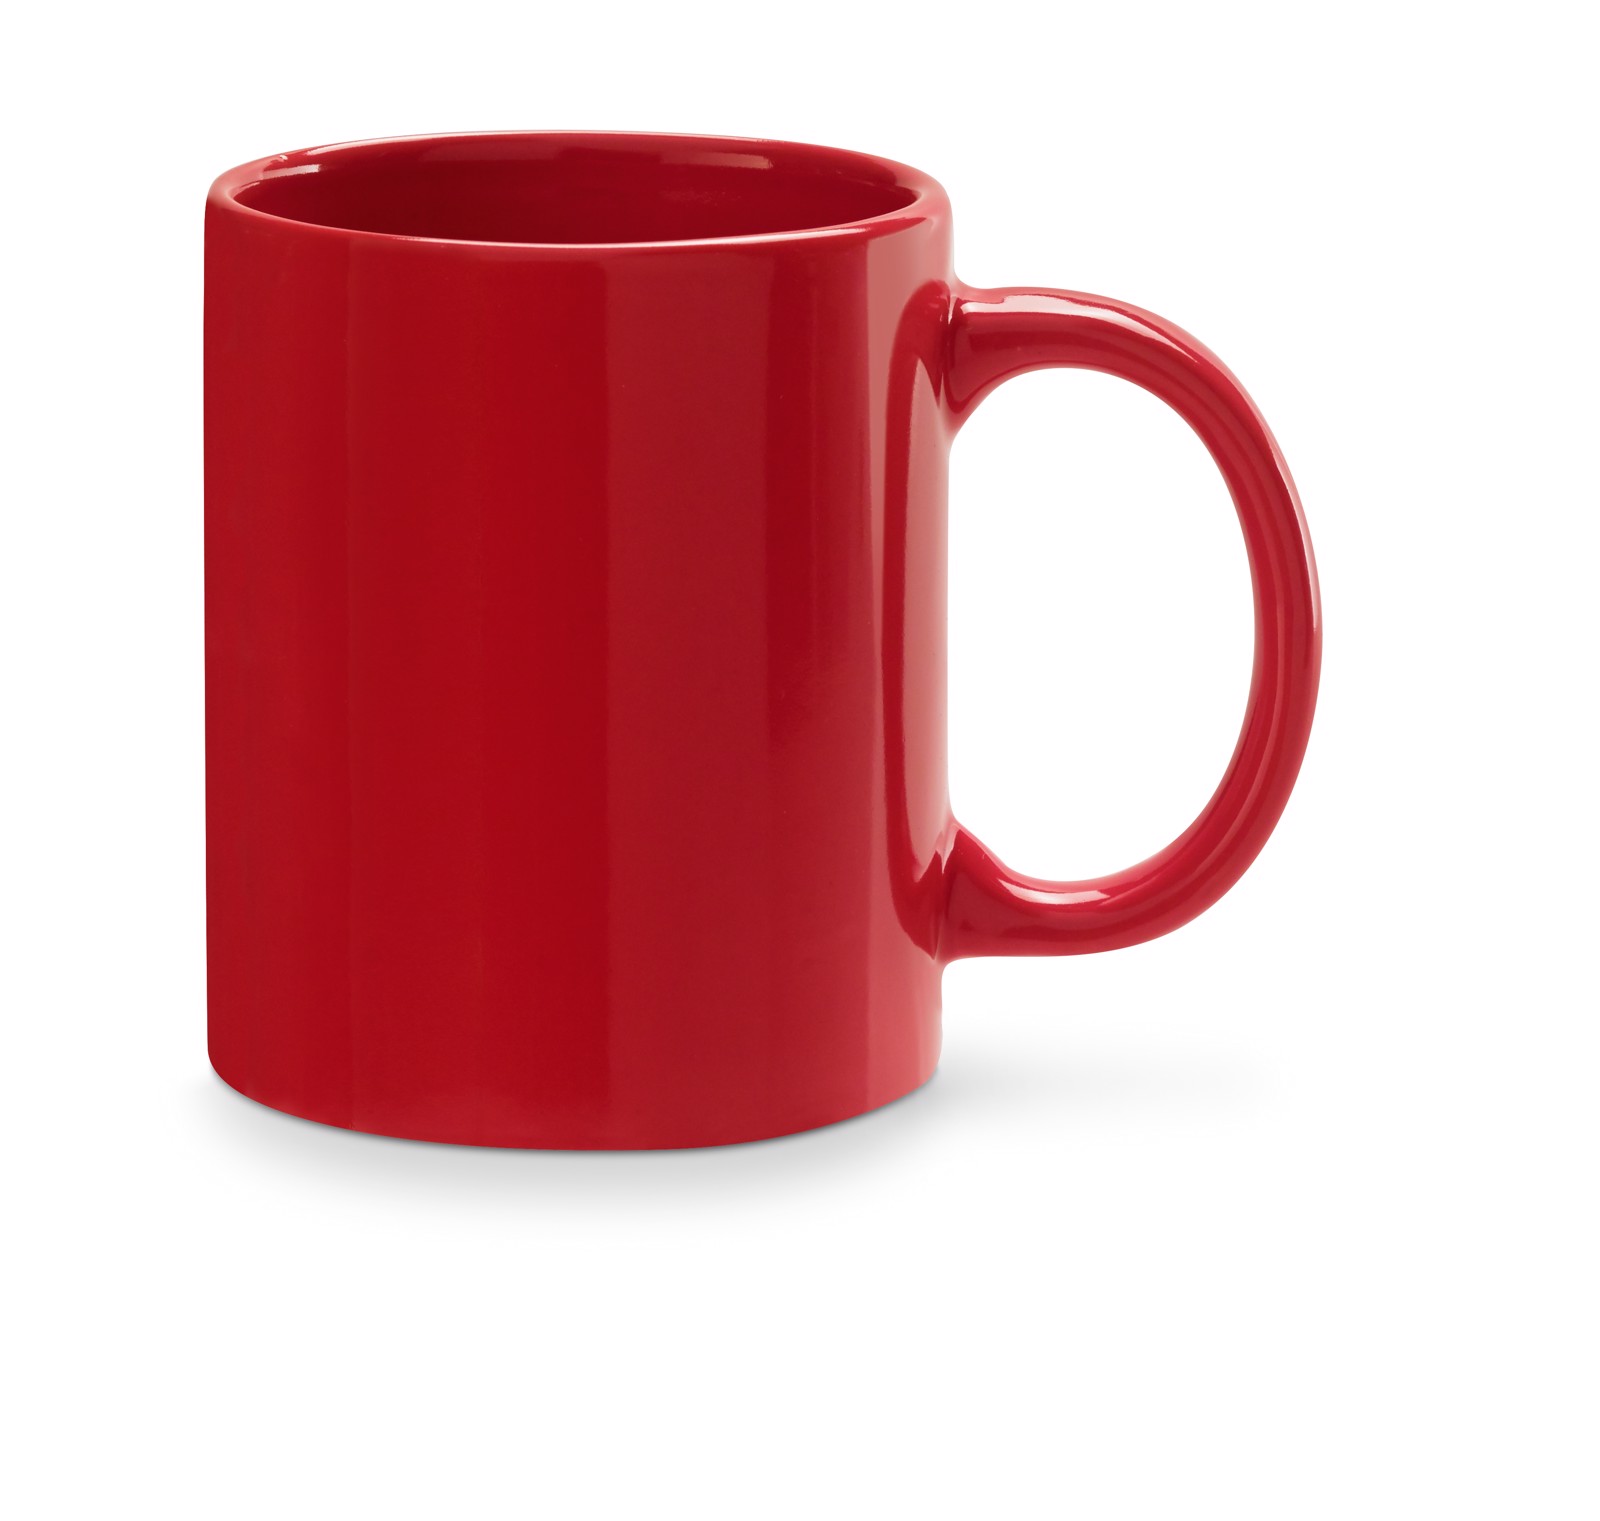 BARINE. Ceramic mug 350 ml - Red